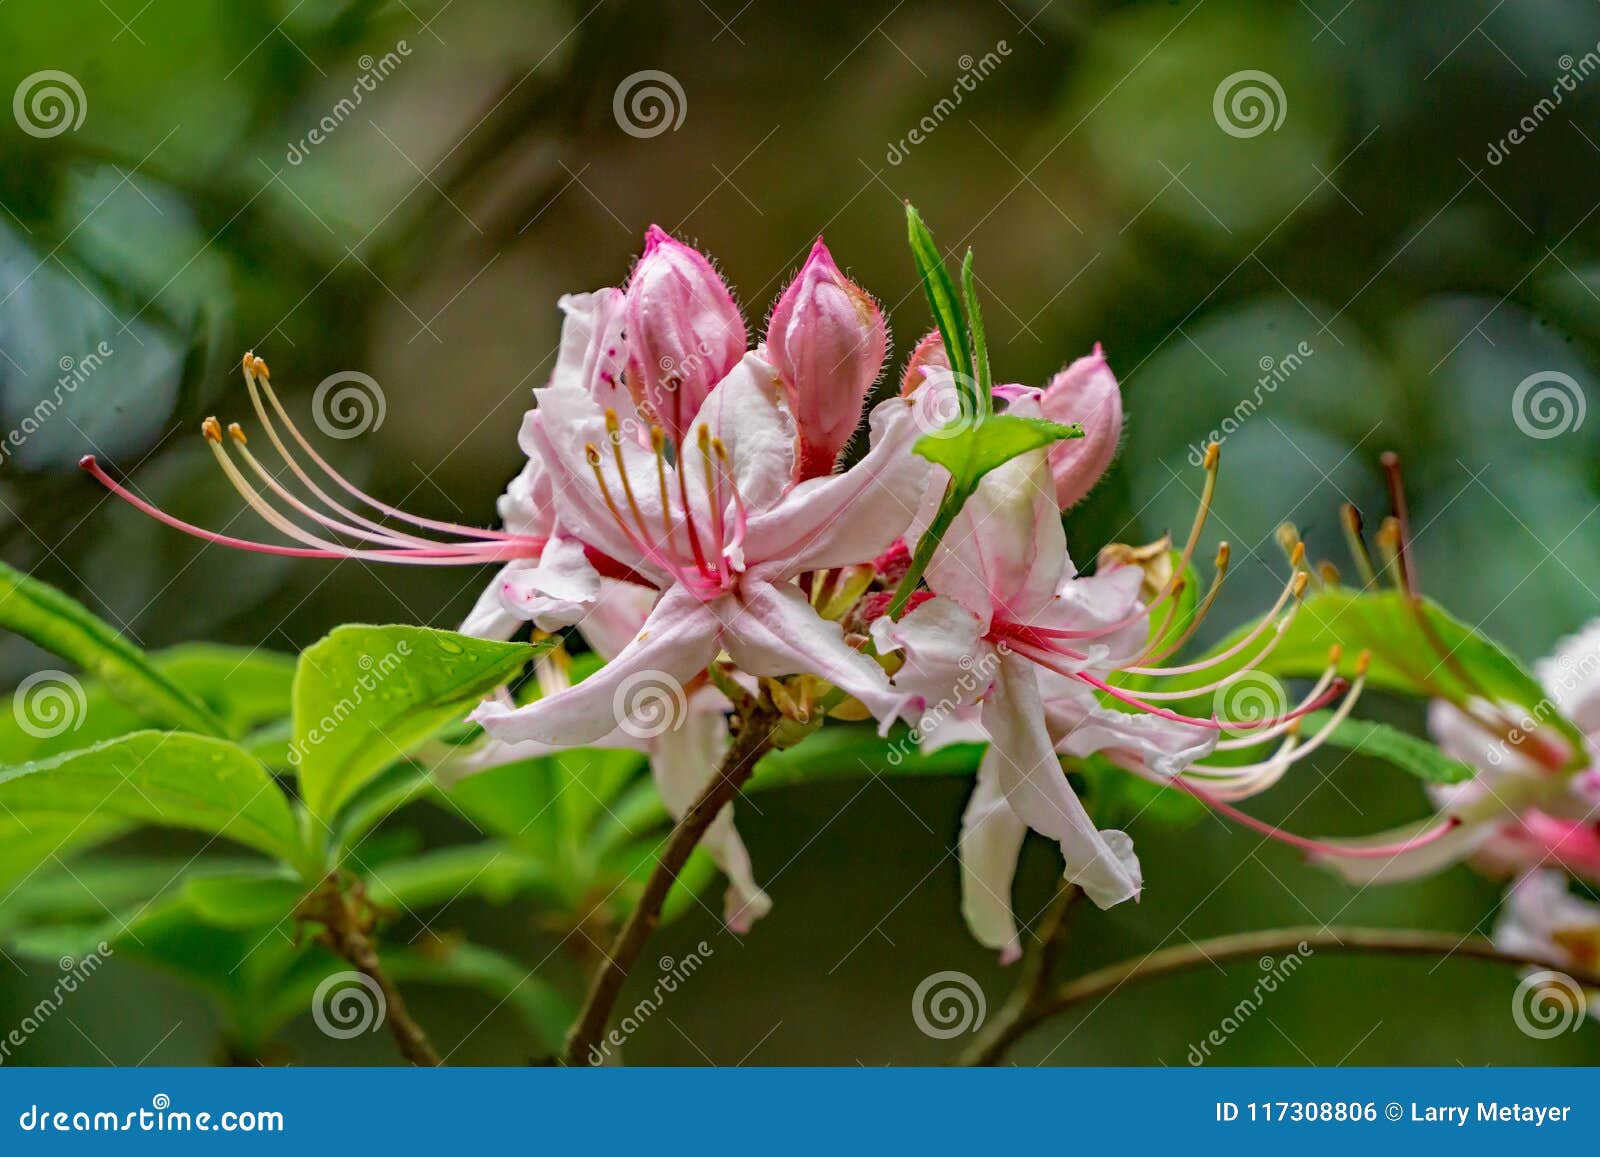 close-up of a group of early azalea flowers Ã¢â¬â rhododendron prinophyllum